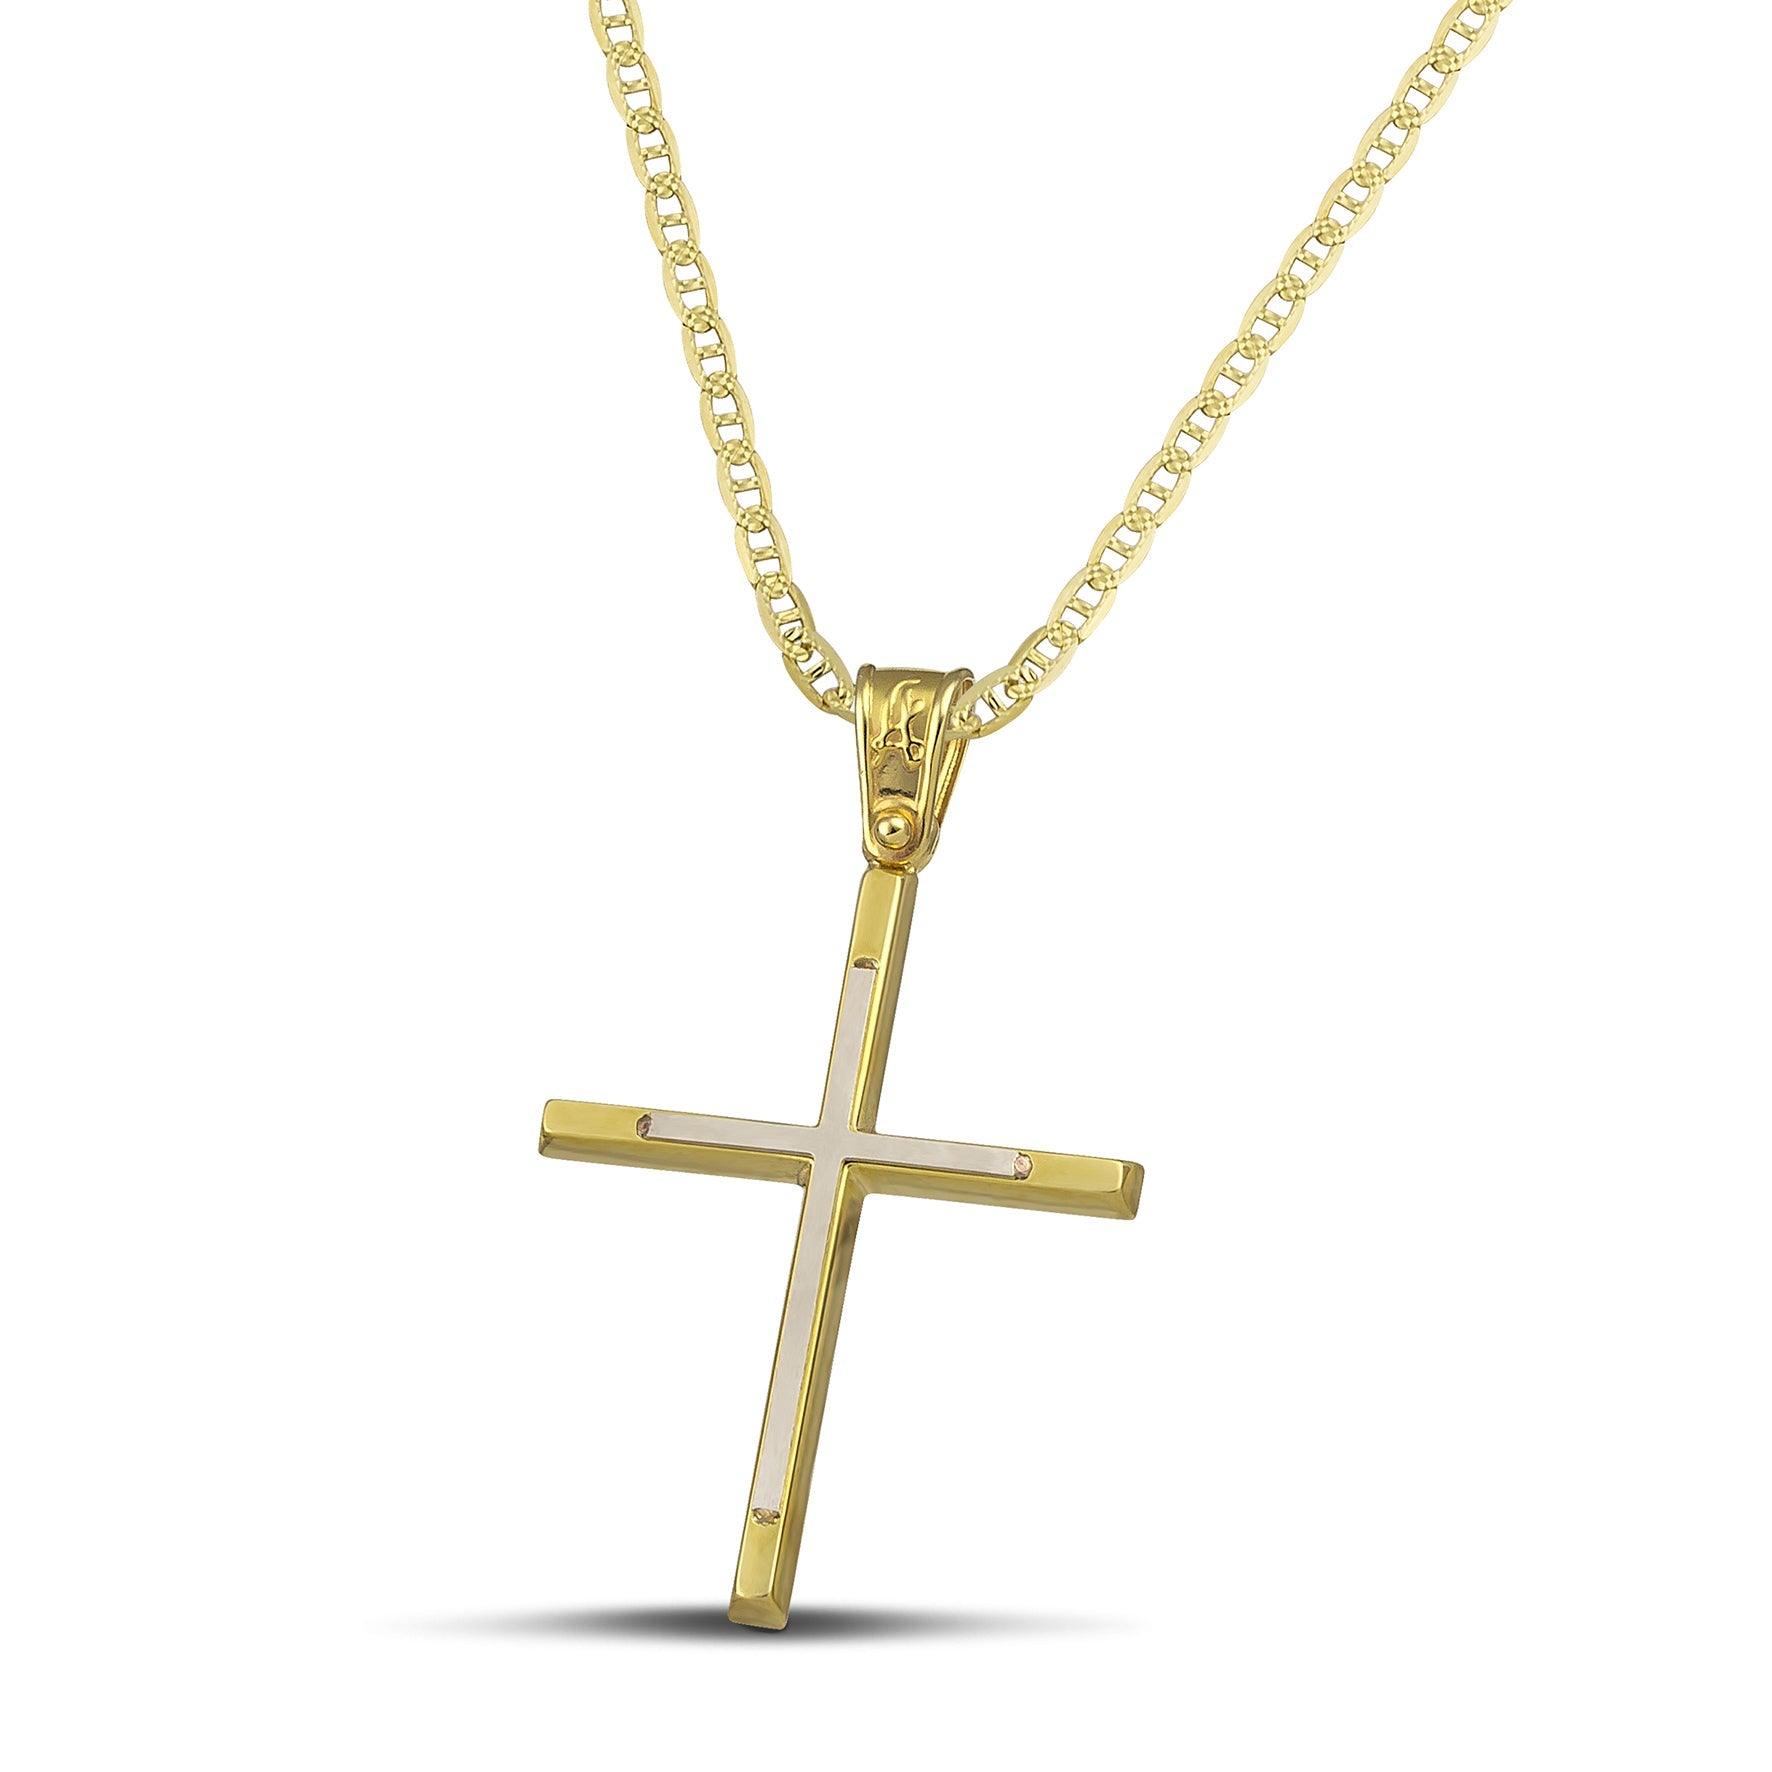 Γυναικείος σταυρός από χρυσό 14 καρατίων και λευκόχρυσο, με «Θ» αλυσίδα.